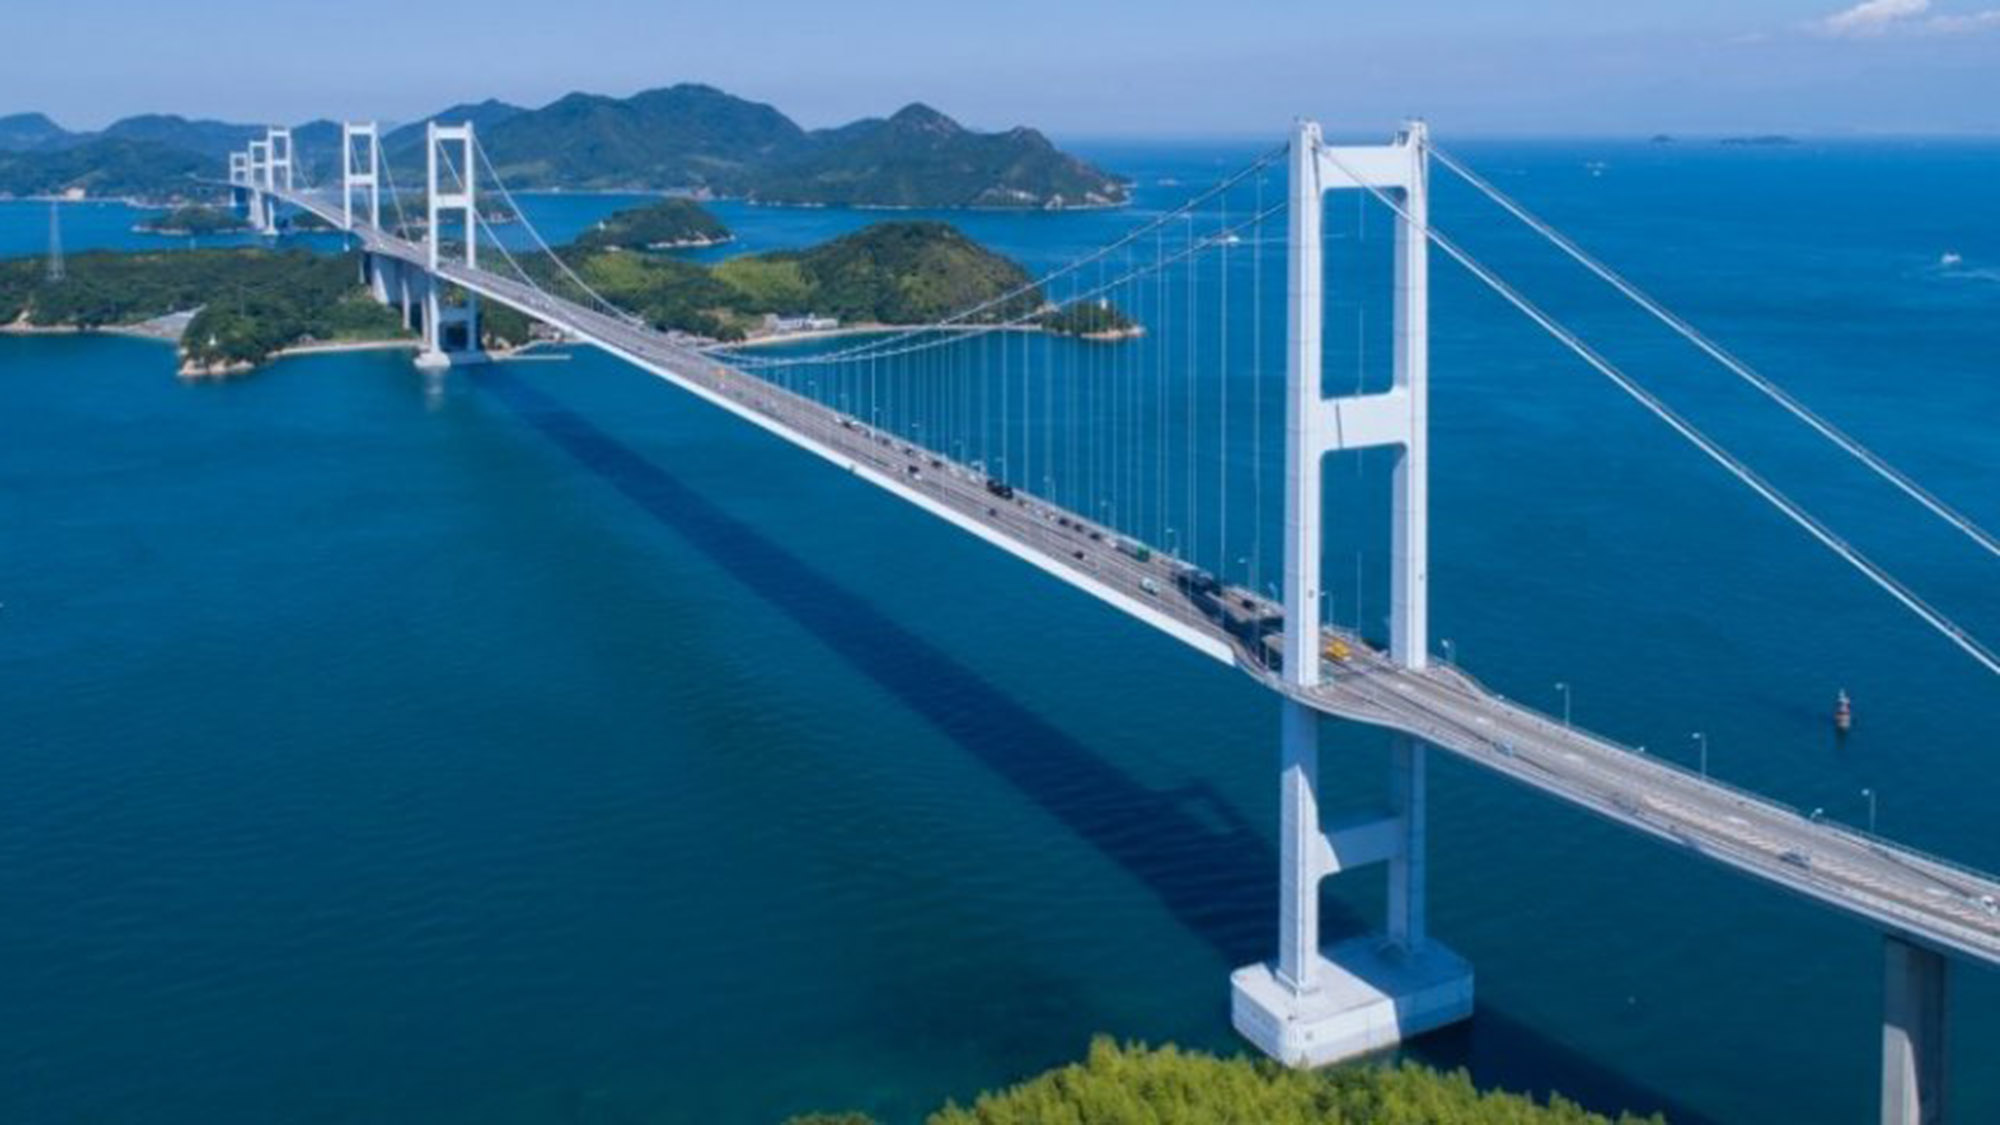 ・＜瀬戸内しまなみ海道＞７つの橋と瀬戸内海の島々をつなぐ絶景ロードです